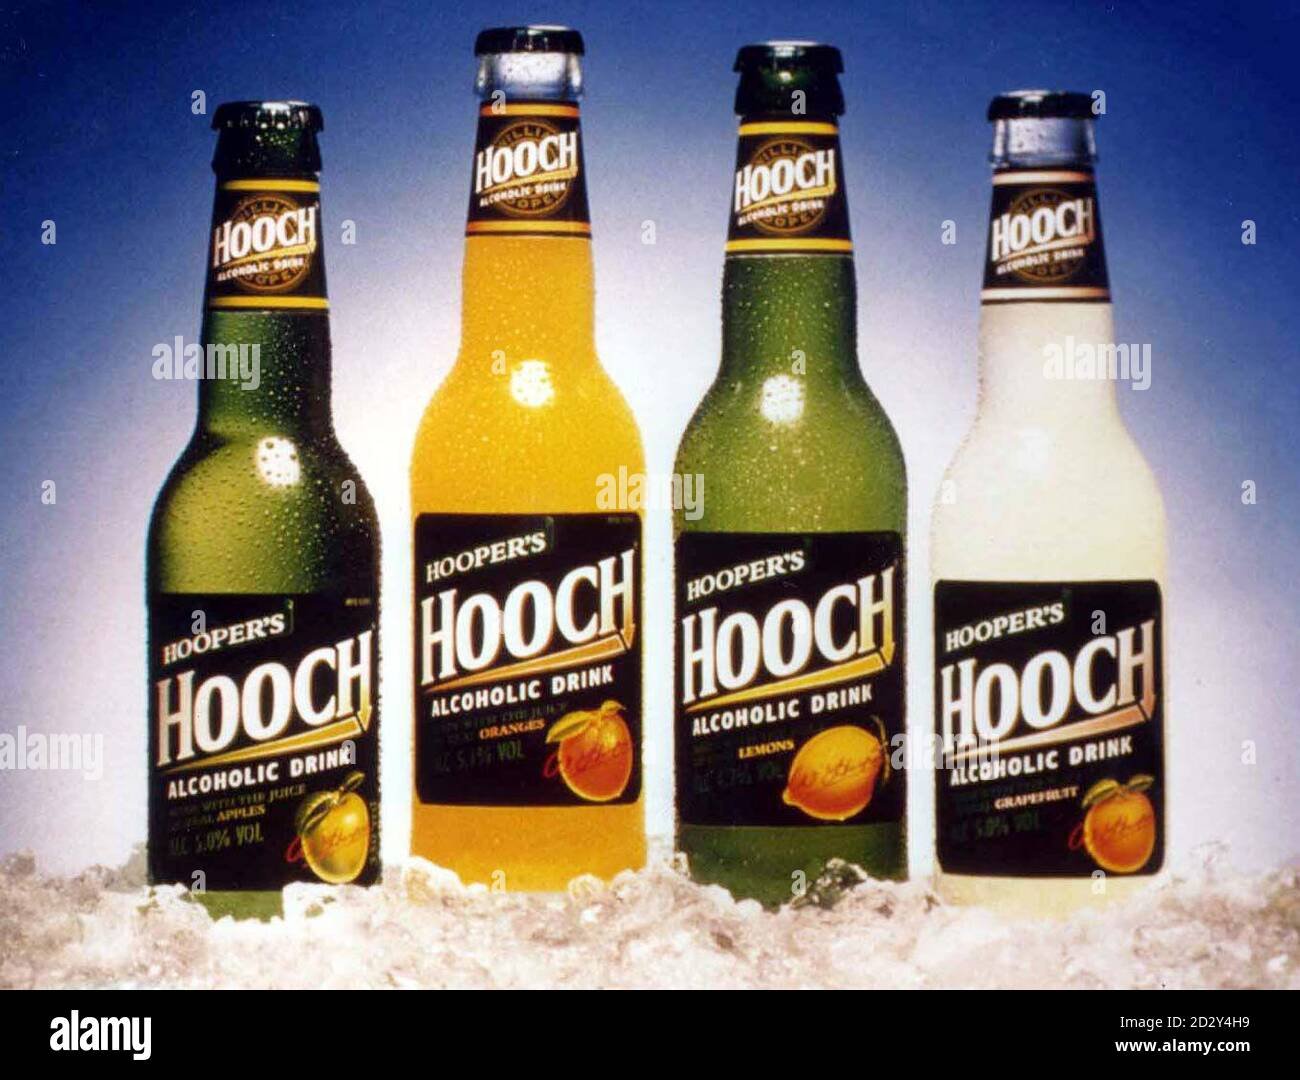 Пиво хуч. Hoopers напиток. Алкогольный напиток Hooch. Пиво Hooch. Хуперс Хуч.